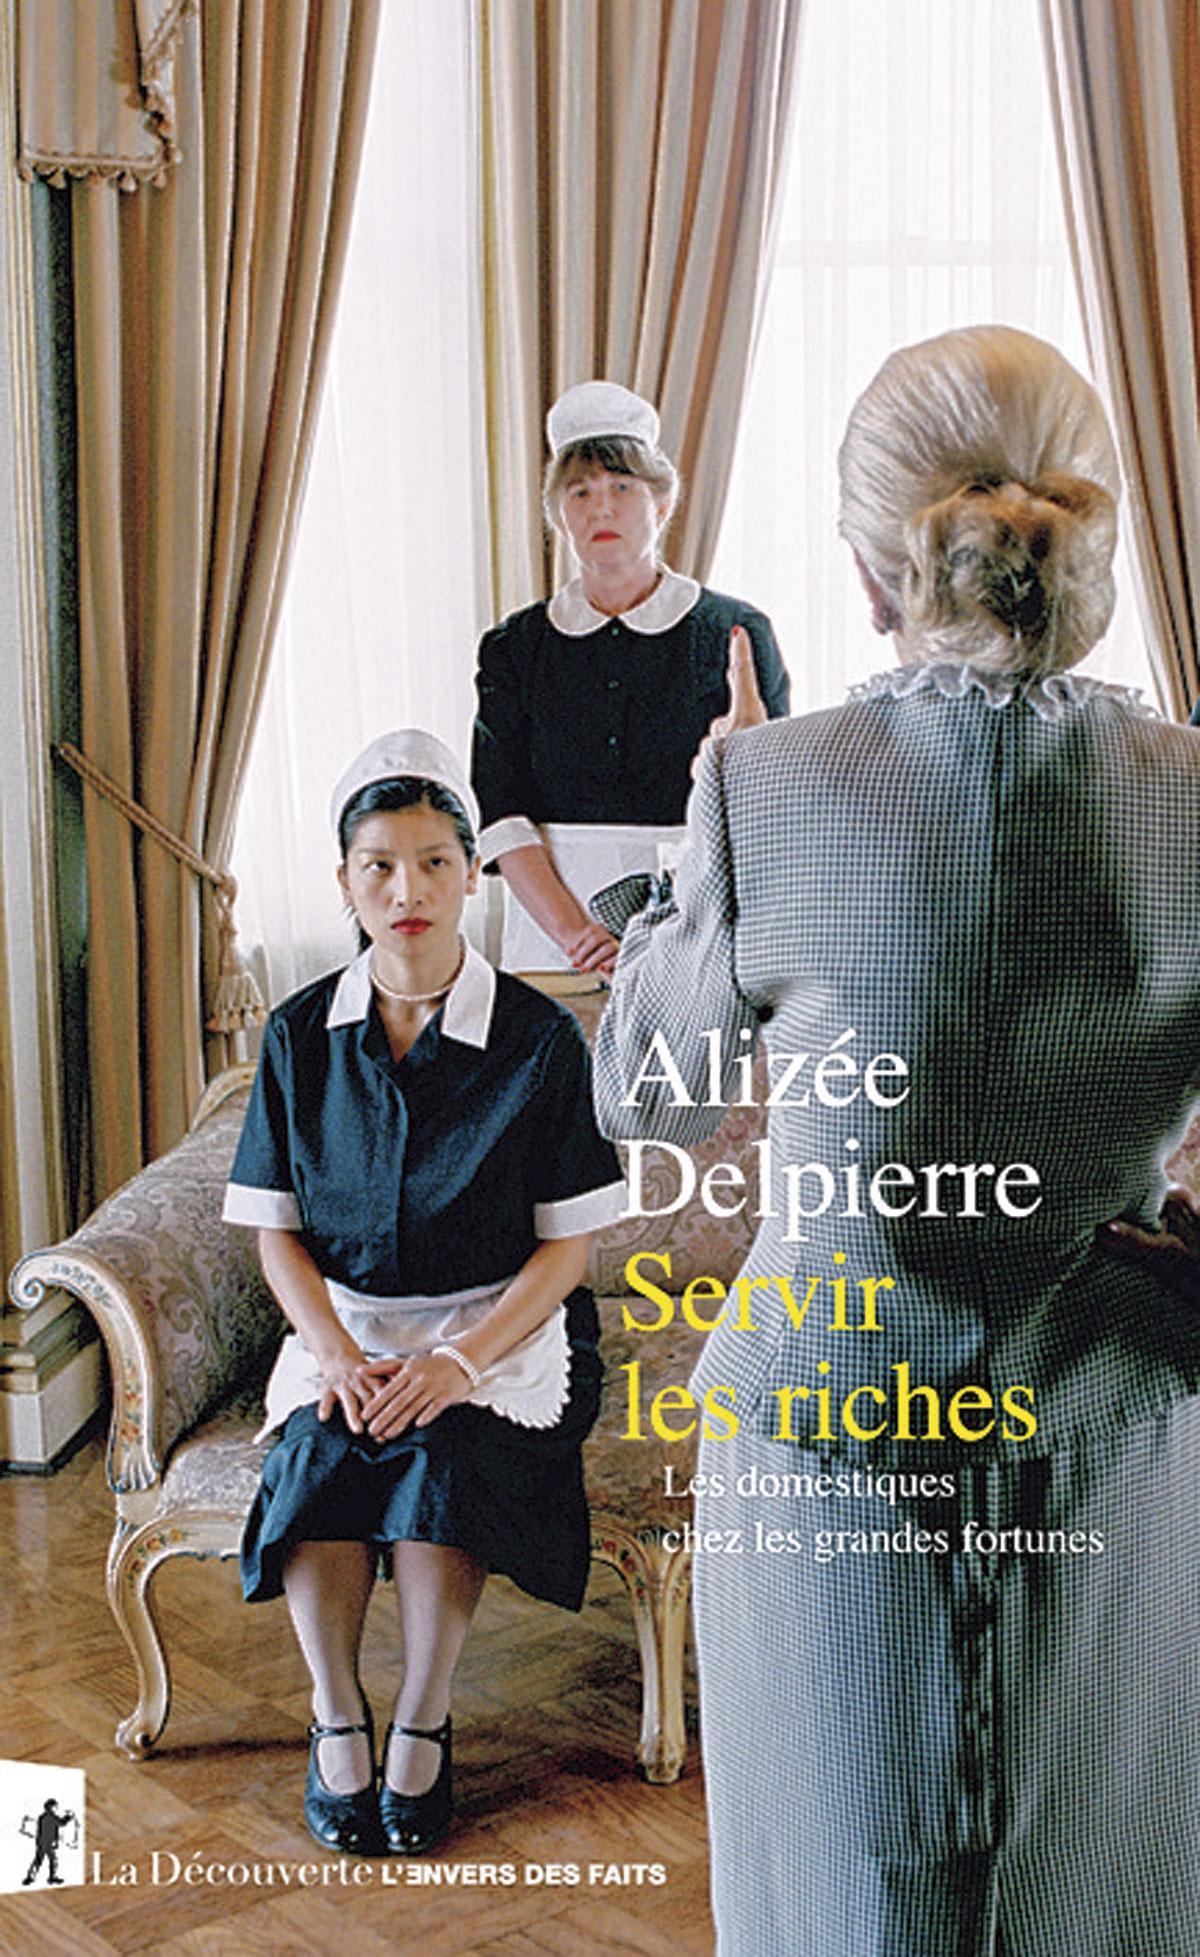 Servir les riches, Les domestiques chez les grandes fortunes, par Alizée Delpierre, La Découverte.